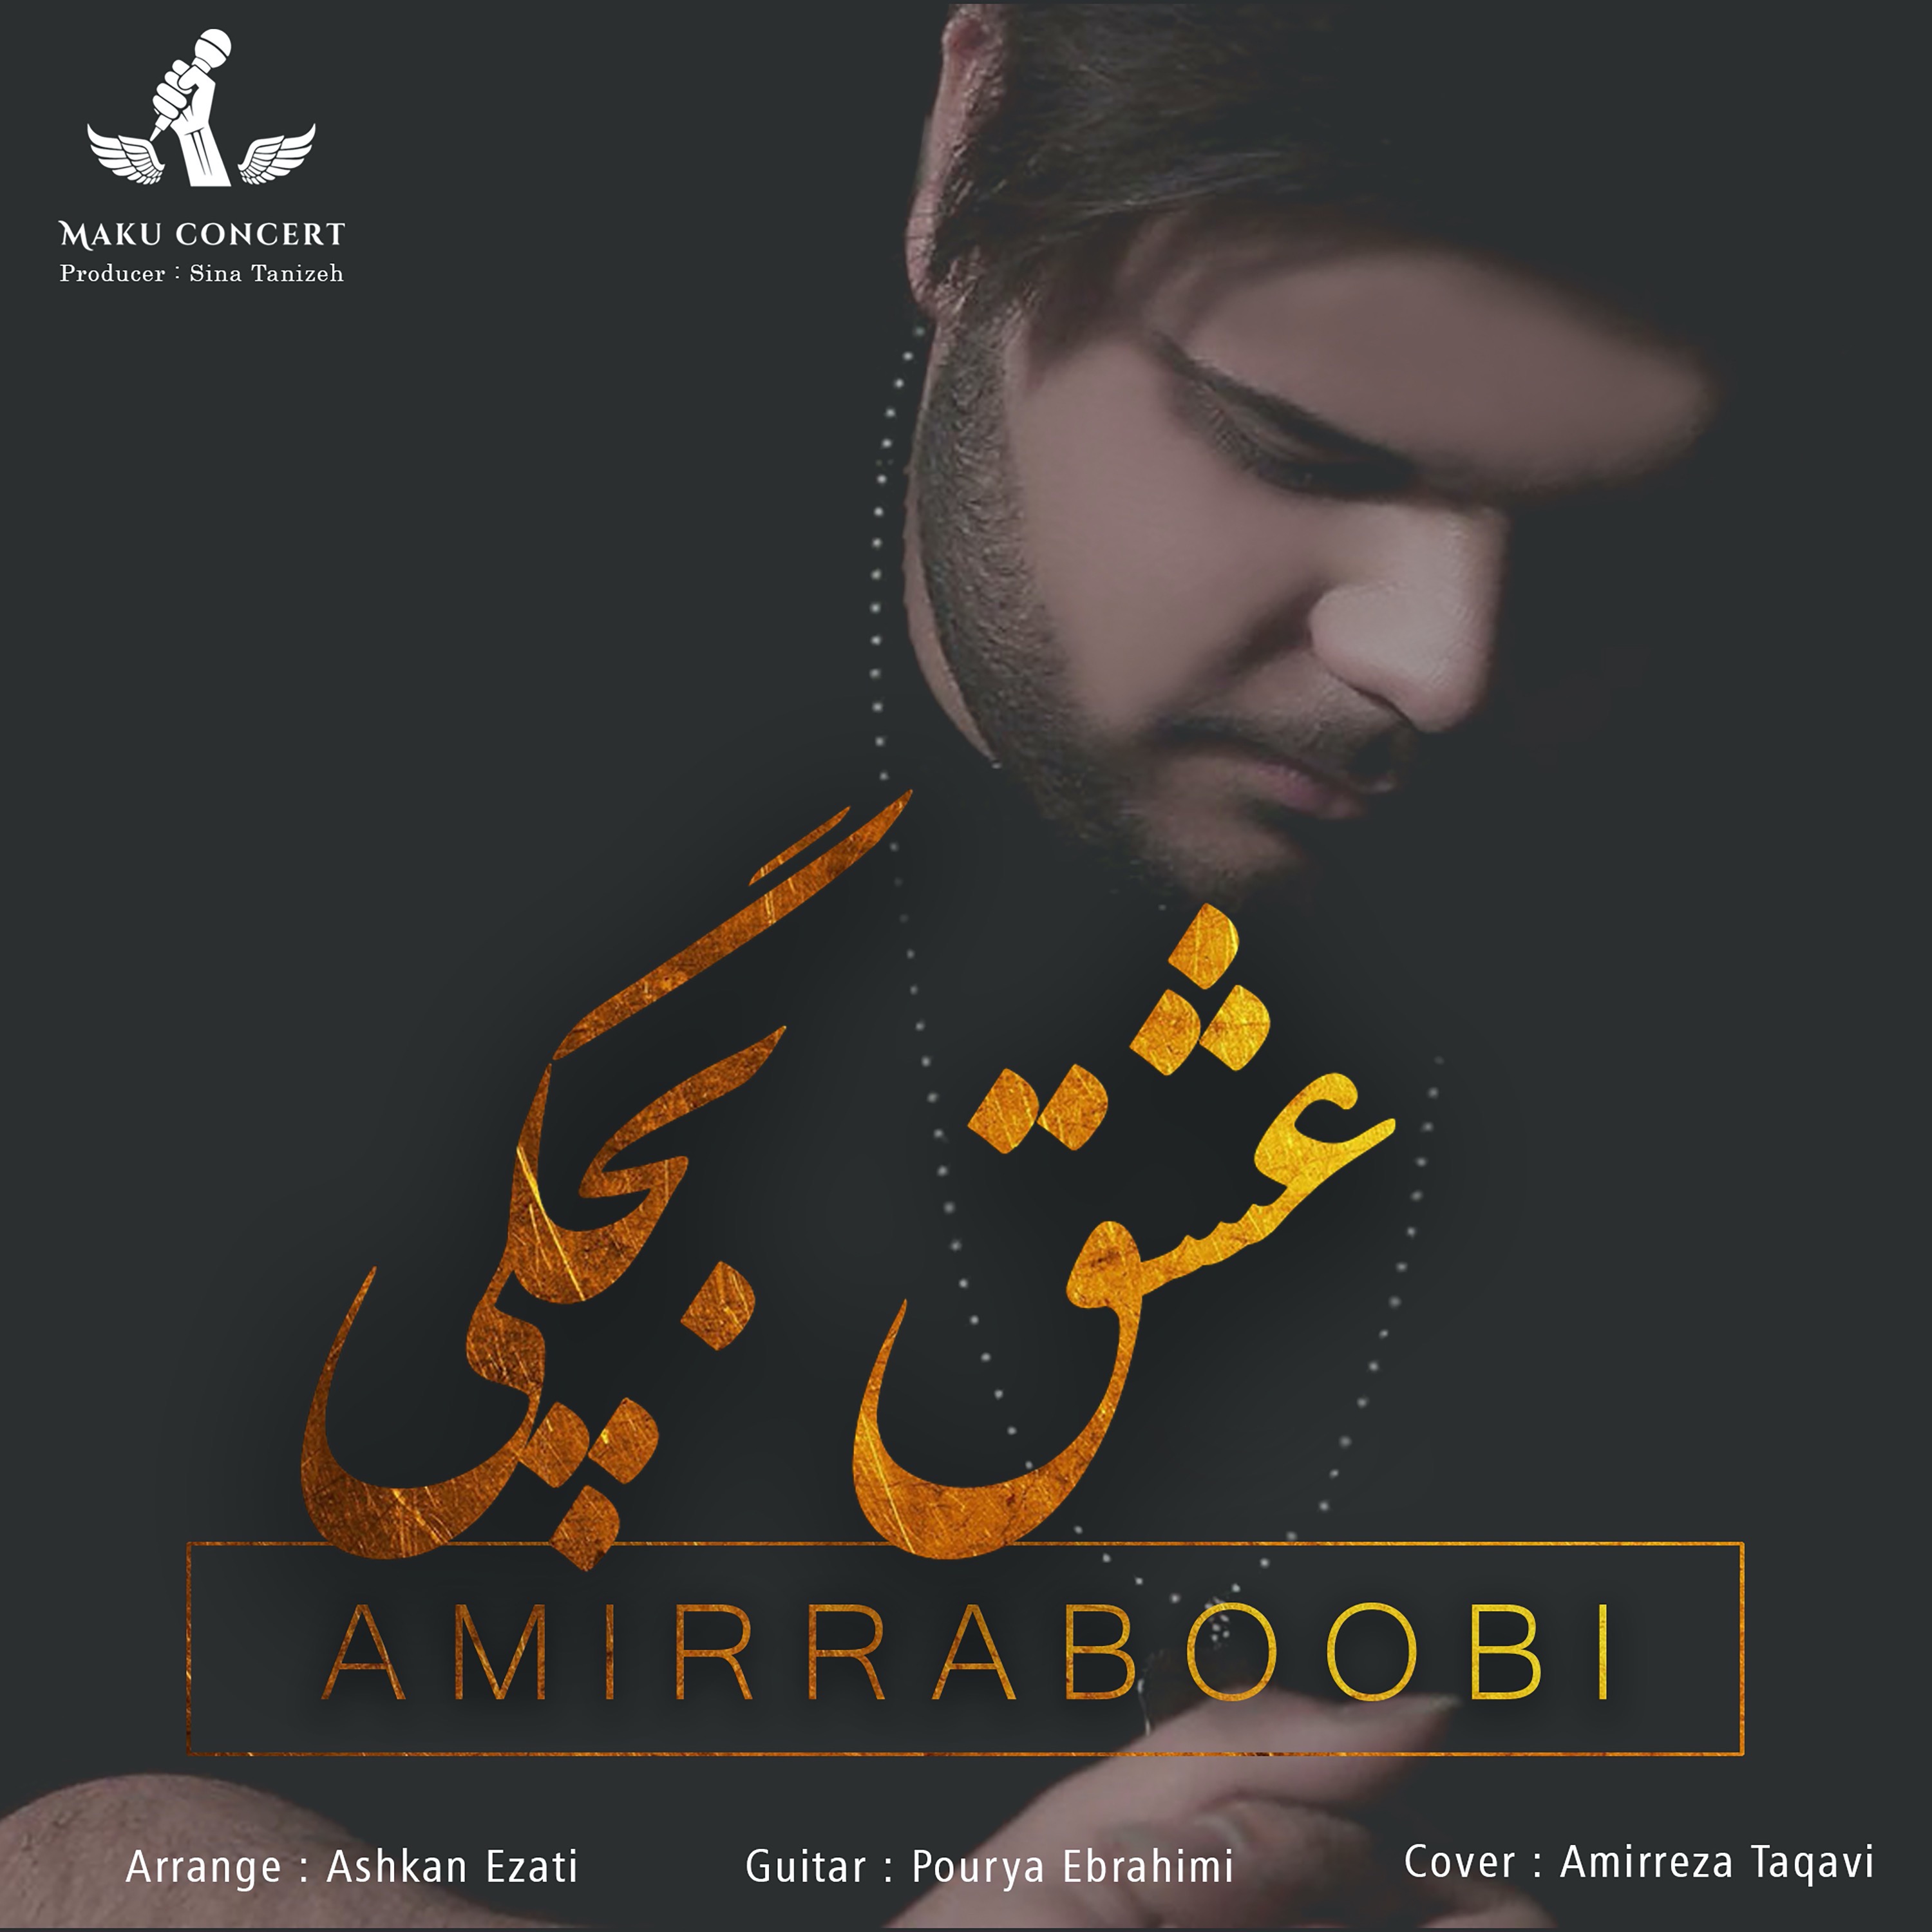  دانلود آهنگ جدید امیر ربوبی - عشق بچگی | Download New Music By Amir Raboobi - Eshghe Bachegi